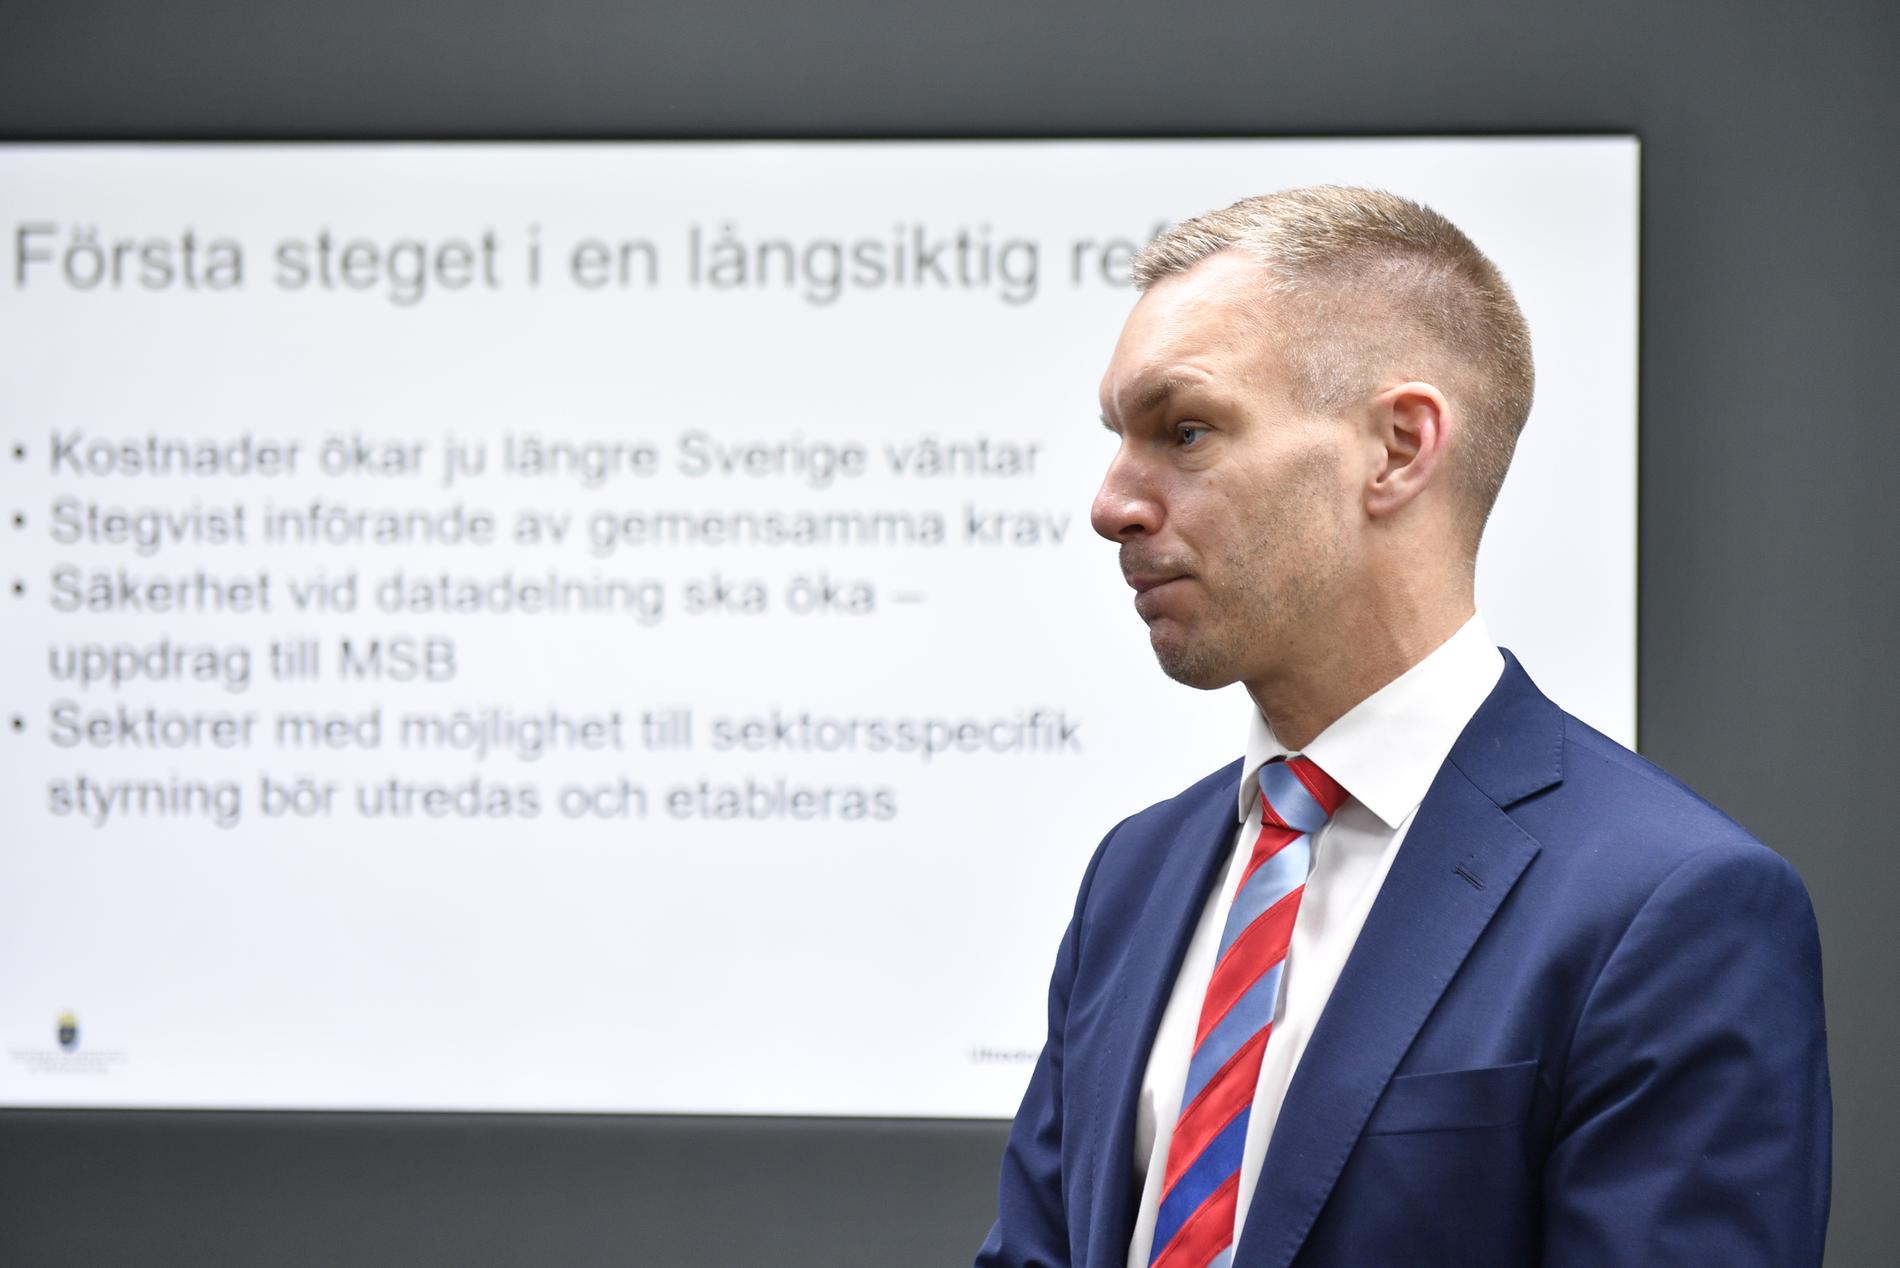 Civilminister Erik Slottner (KD) under en pressträff där utredningen rörande datadelning mellan myndigheter presenteras.